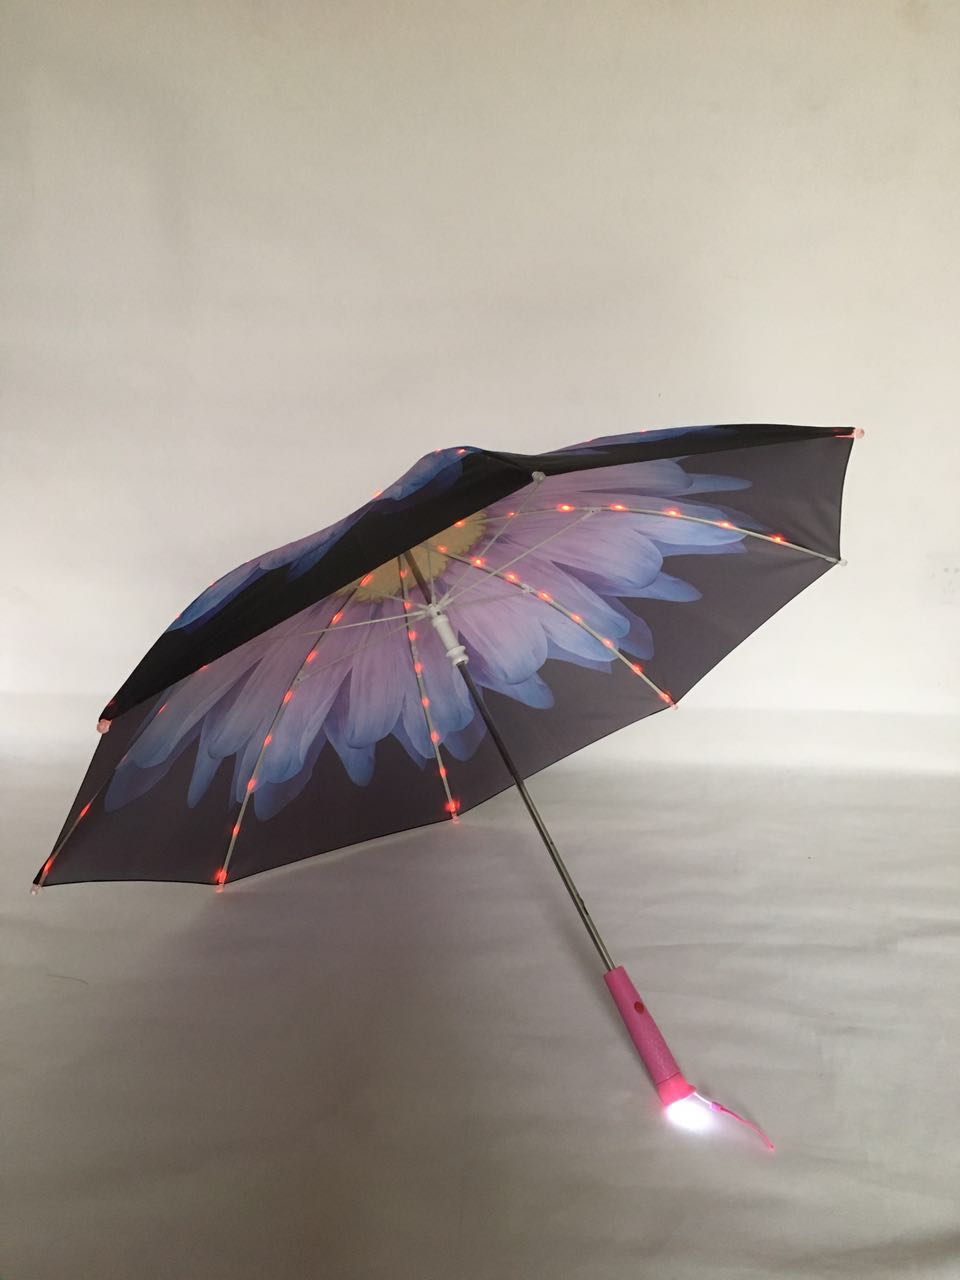 灯光,伞,与,彩布,如此,灿烂,的,配合,阿格,